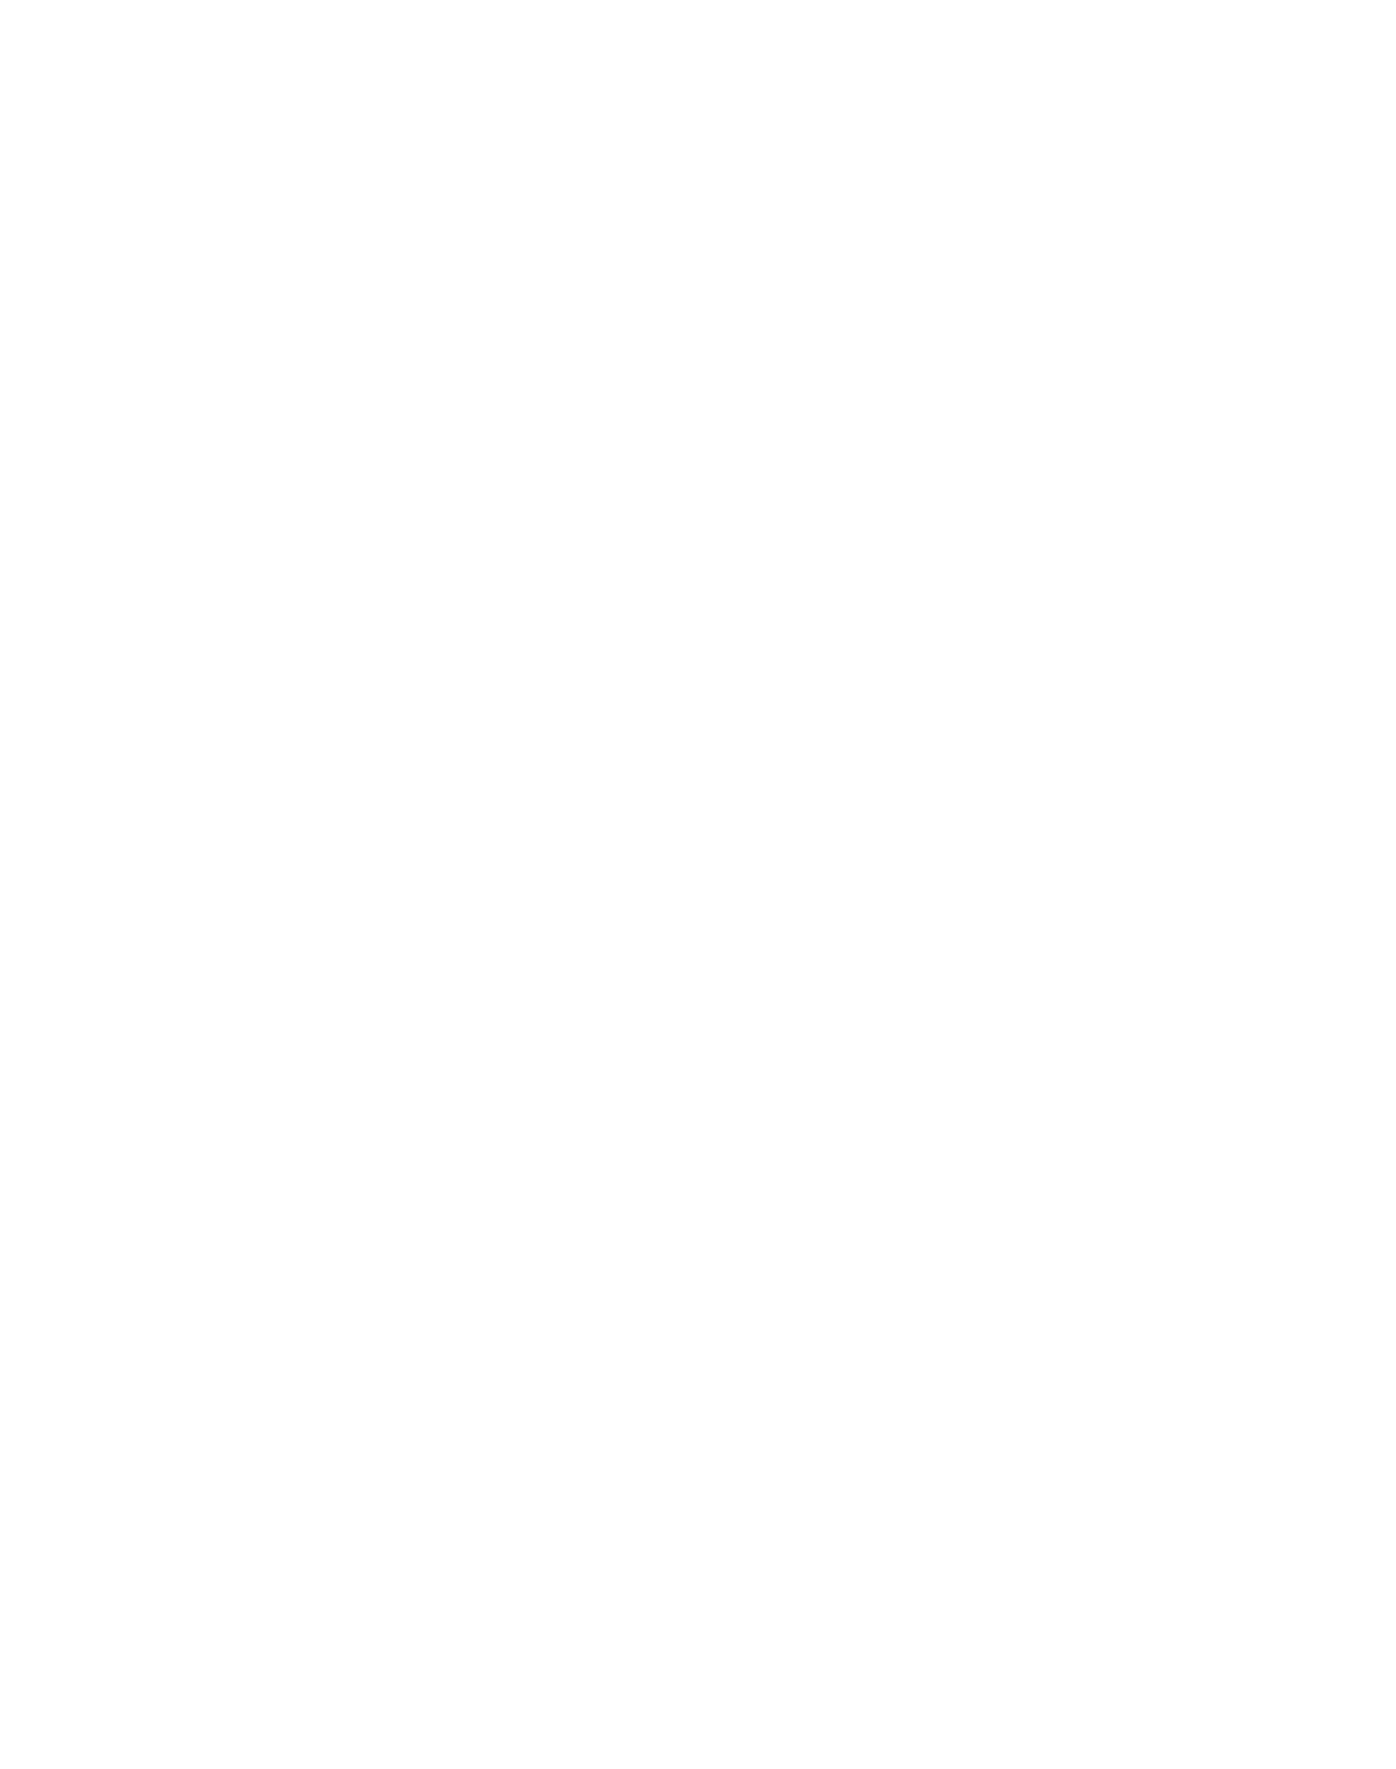 Fiverr logo pour fonds sombres (PNG transparent)